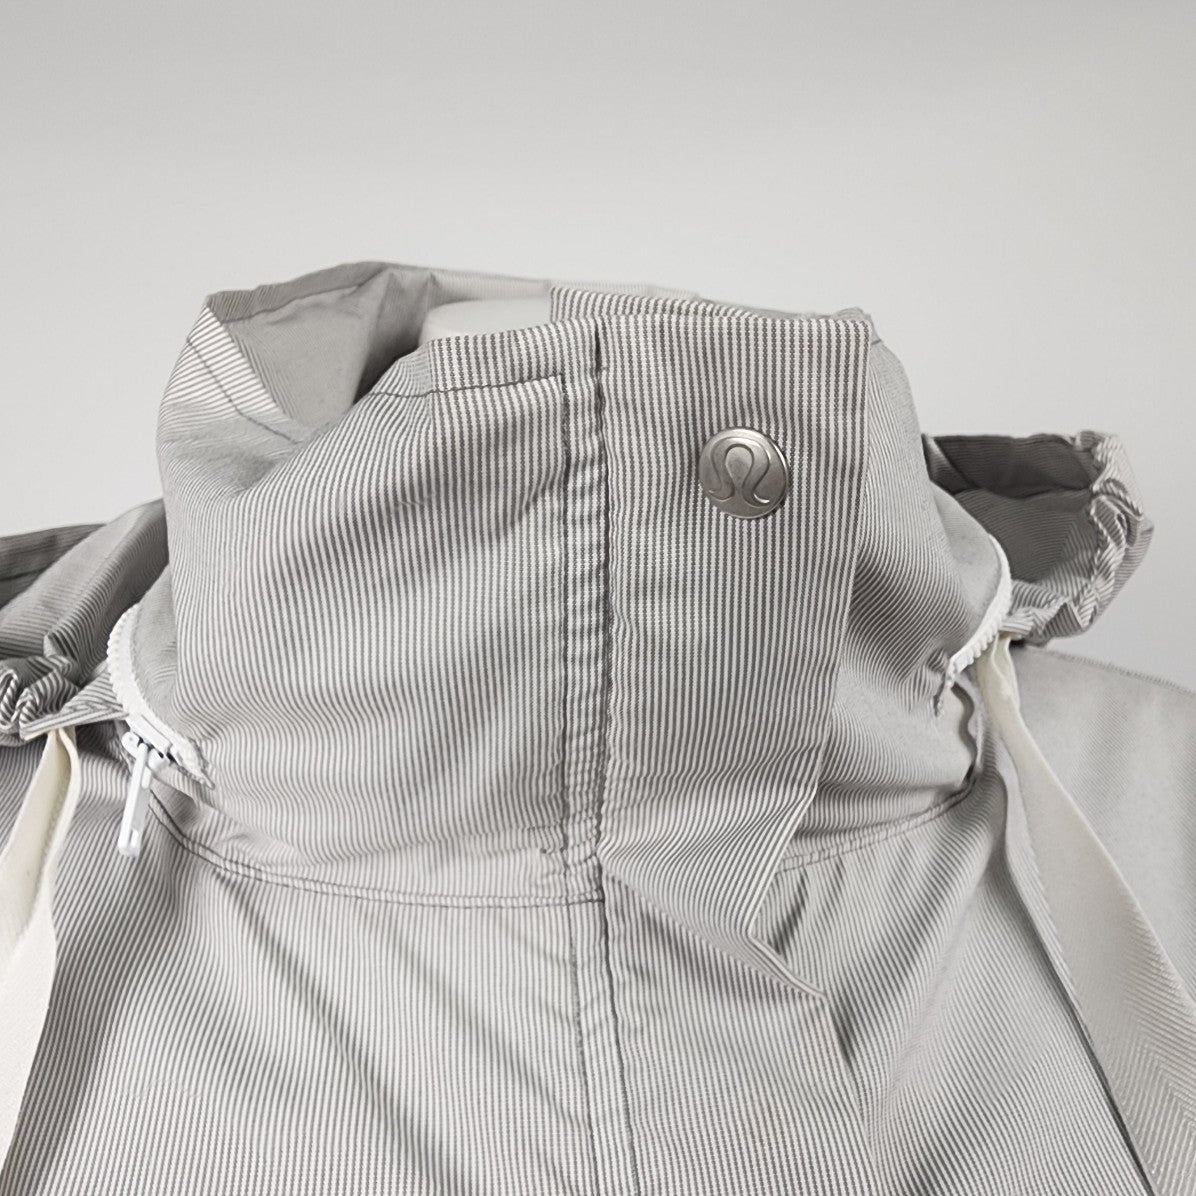 Lululemon Grey Pin Striped Devi Windbreaker Zip Up Light Jacket Size 10